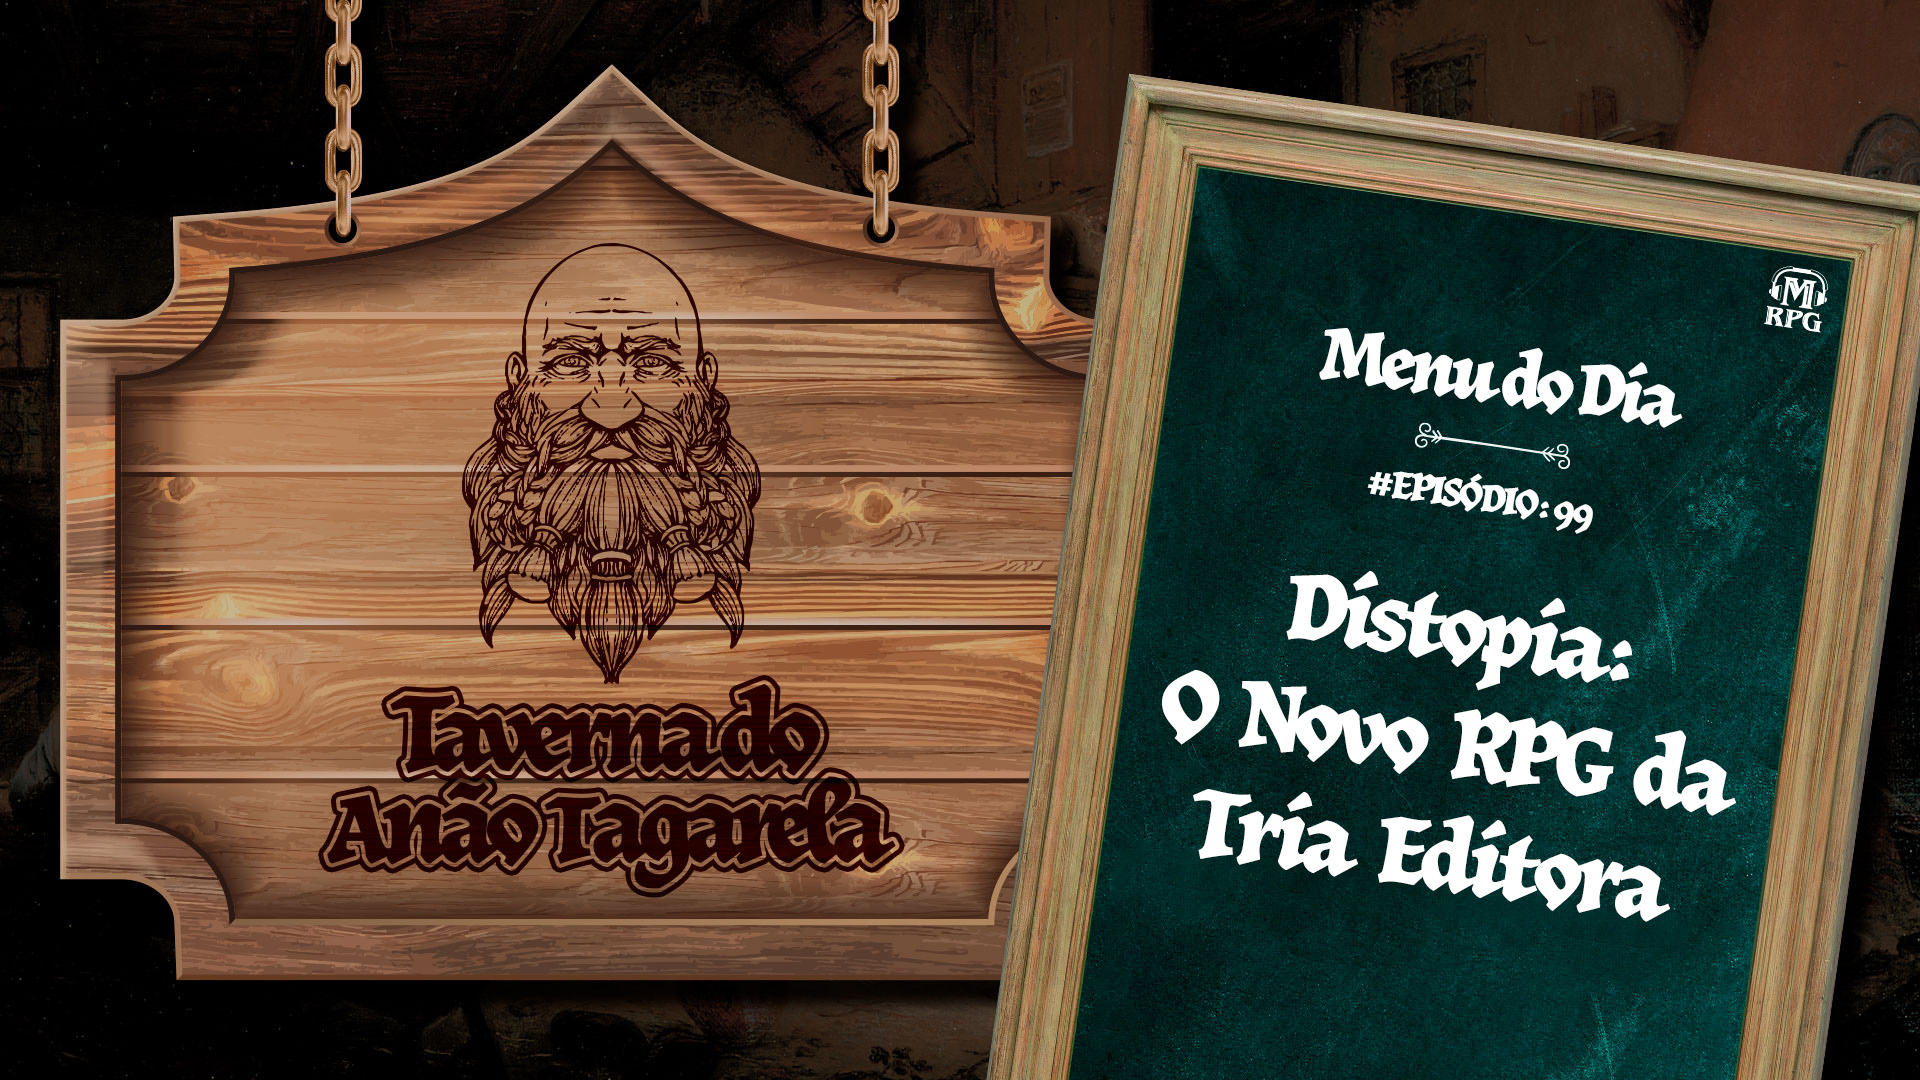 Distopia o novo RPG da Tria Editora - Taverna do Anão Tagarela #99